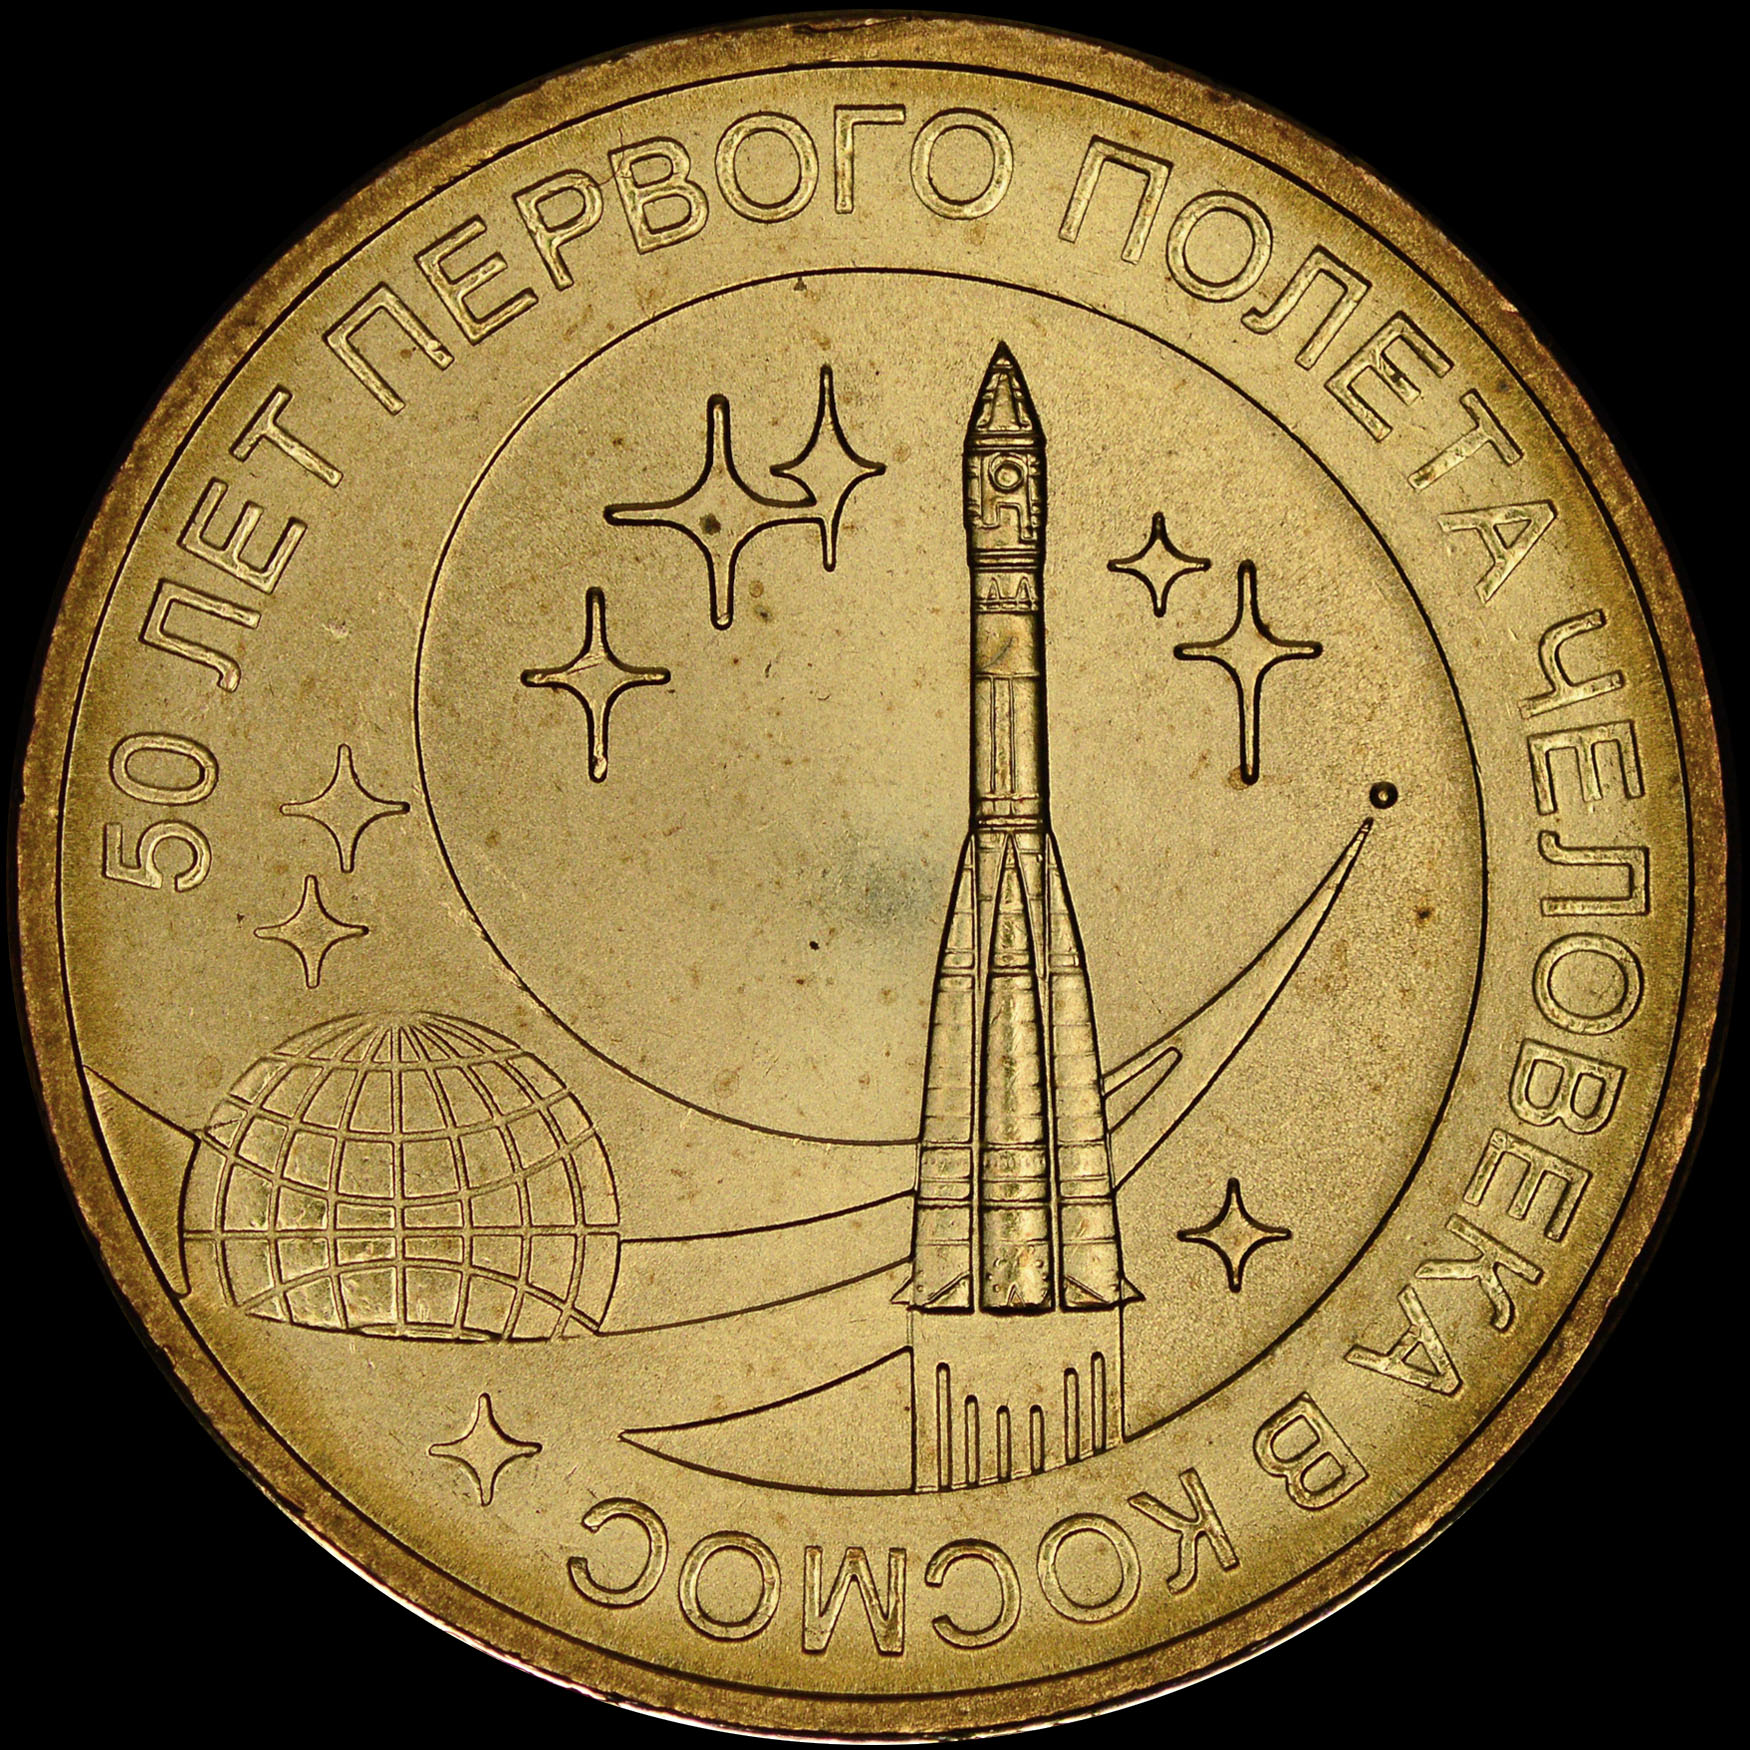 10 рублей первый полет человека. Монета 10 рублей 50 лет первого полета человека в космос 2011.